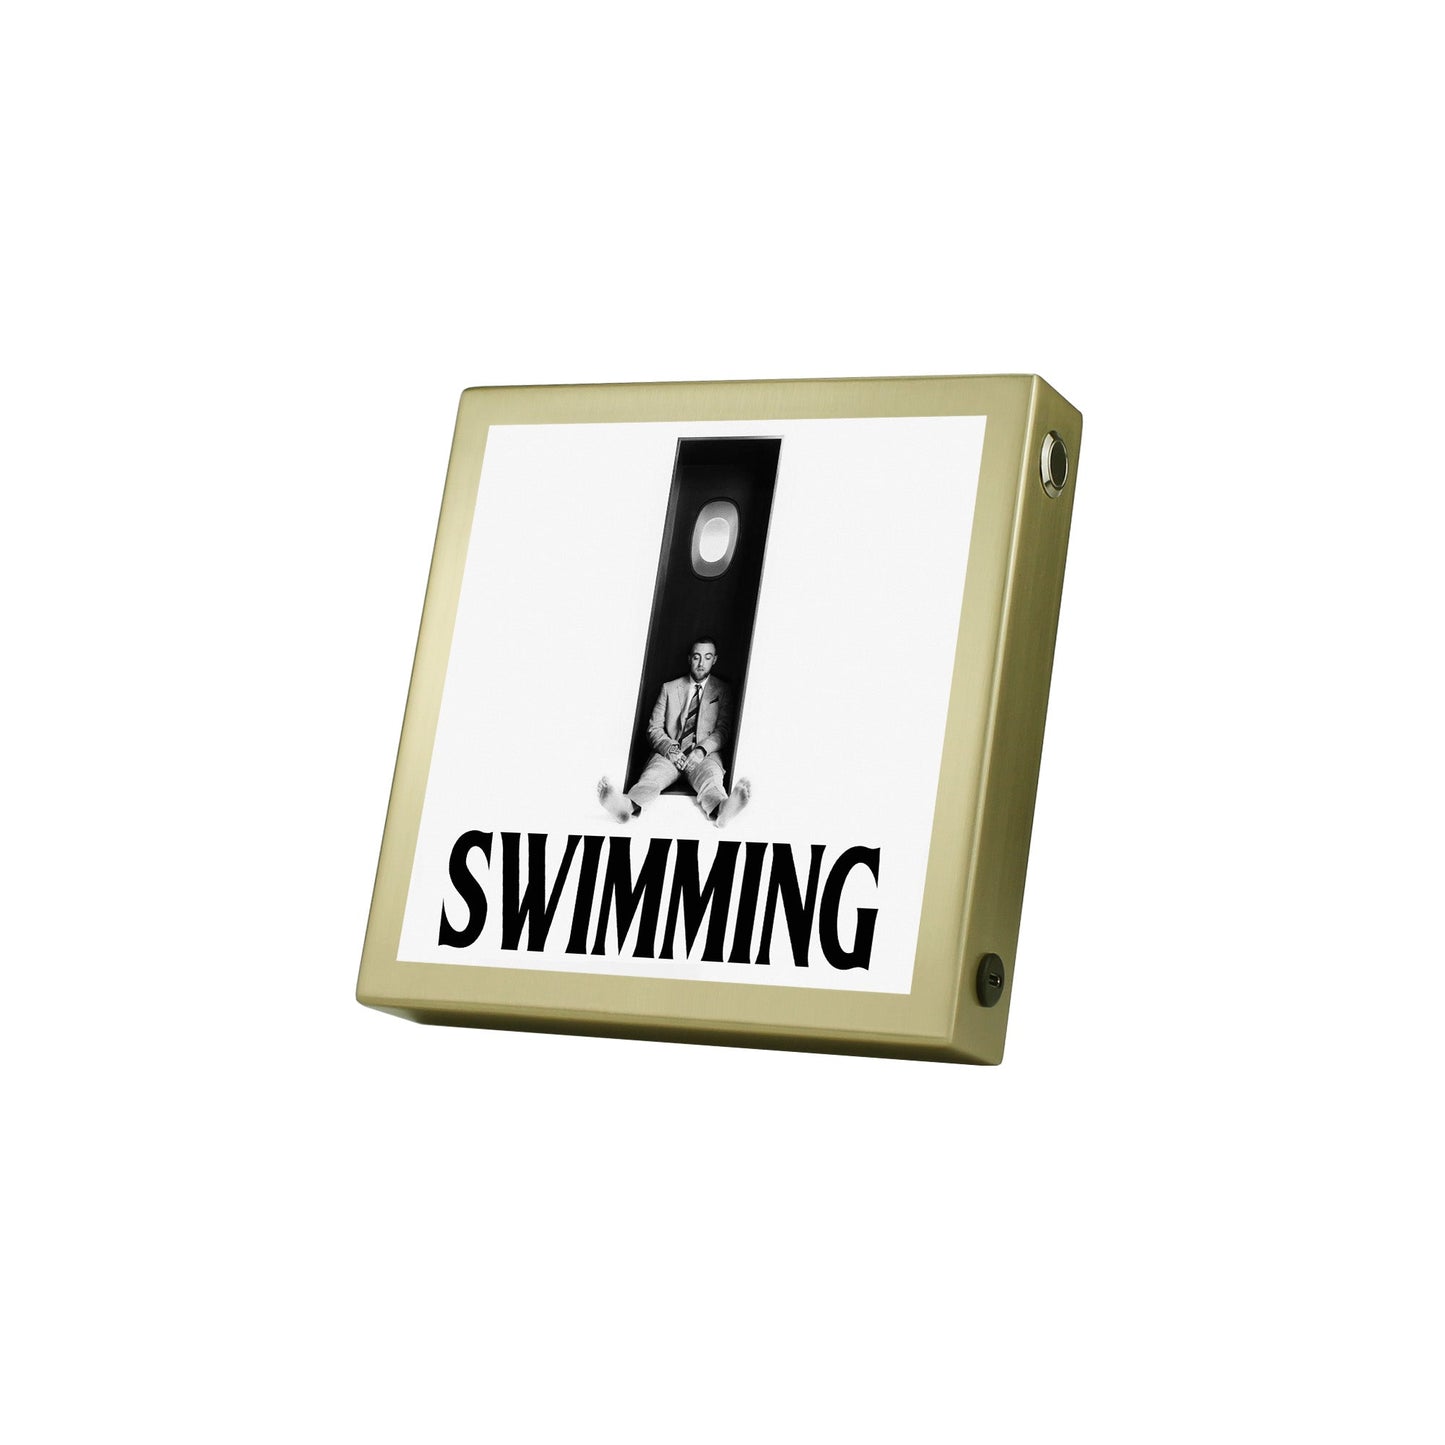 Swimming Mac Miller Album Cover Poster